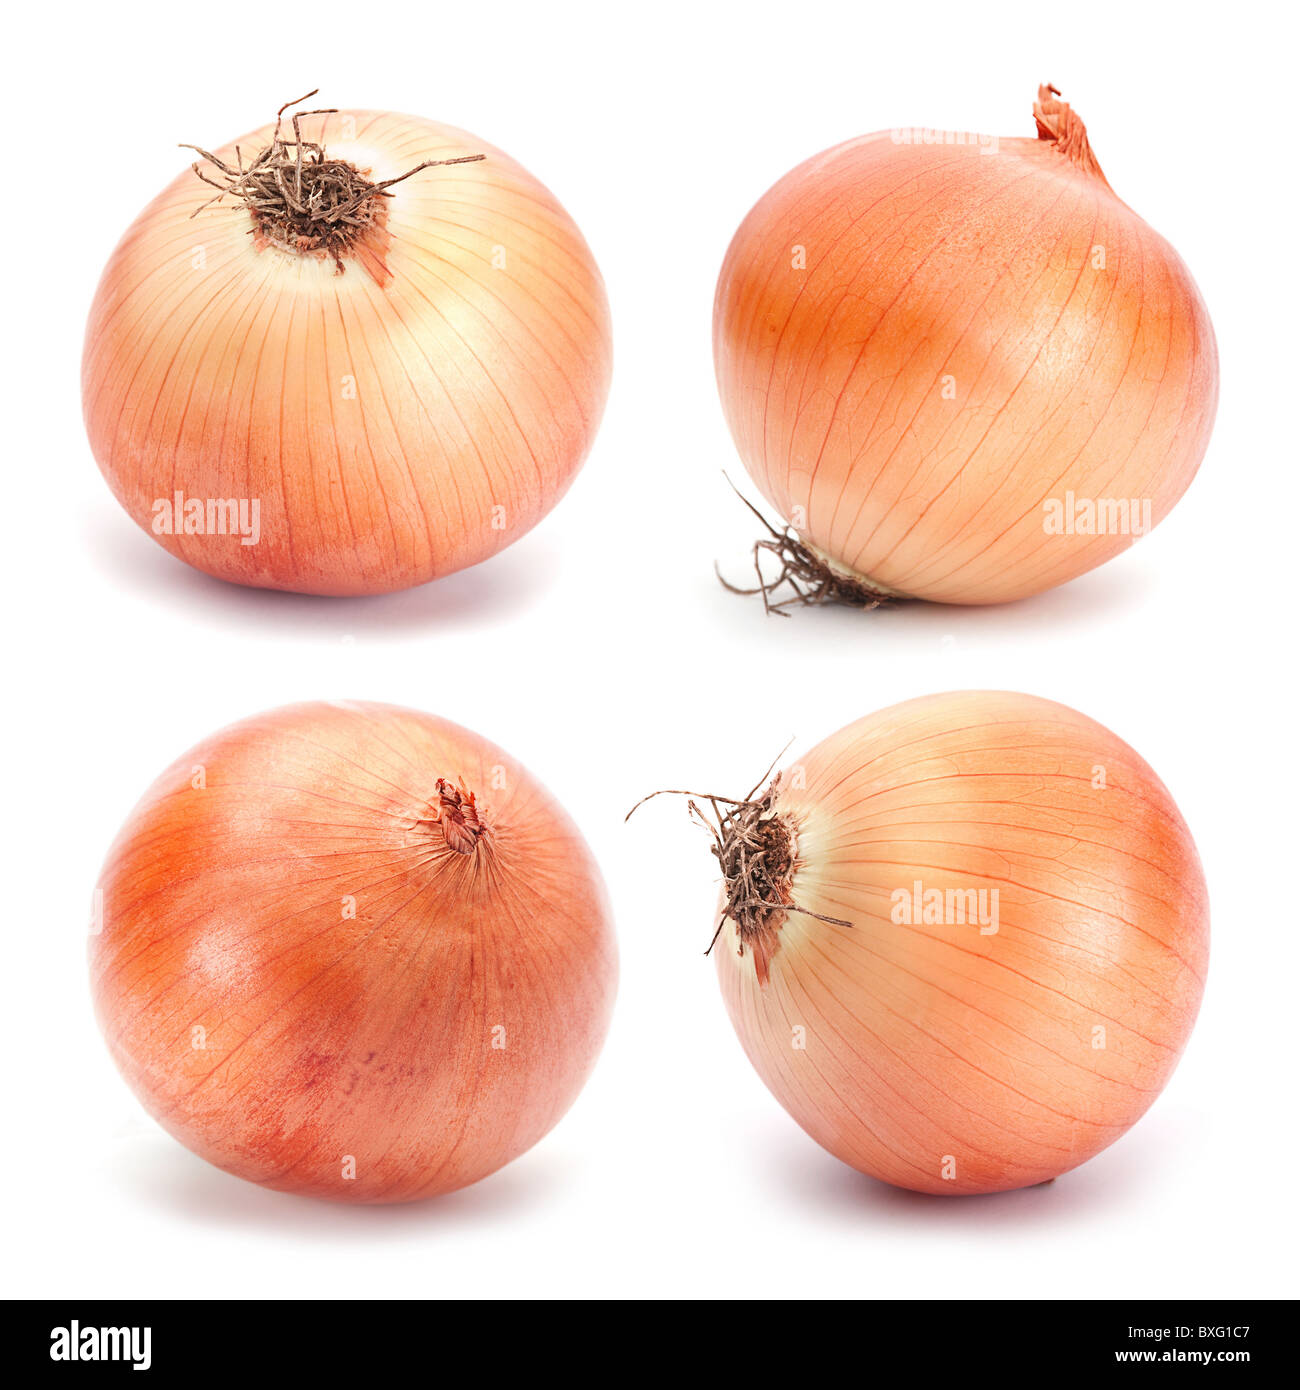 Orange onion vegetable Stock Photo